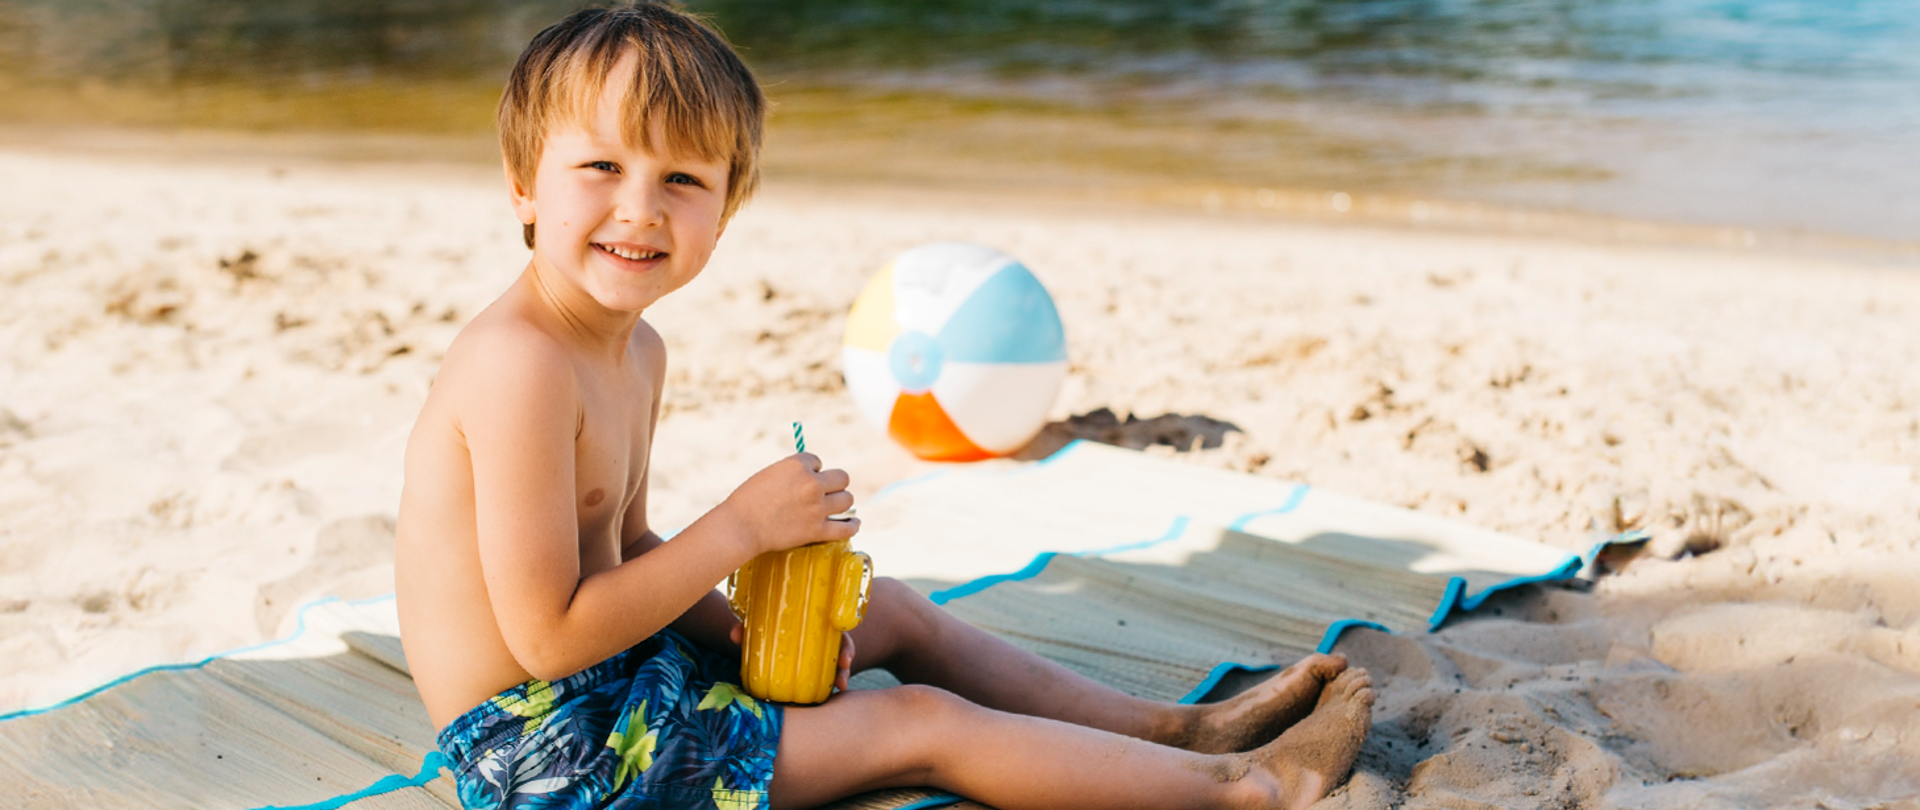 uśmiechnięty chłopiec siedzi na macie na plaży, w ręku trzyma kubek, obok piłka dmuchana